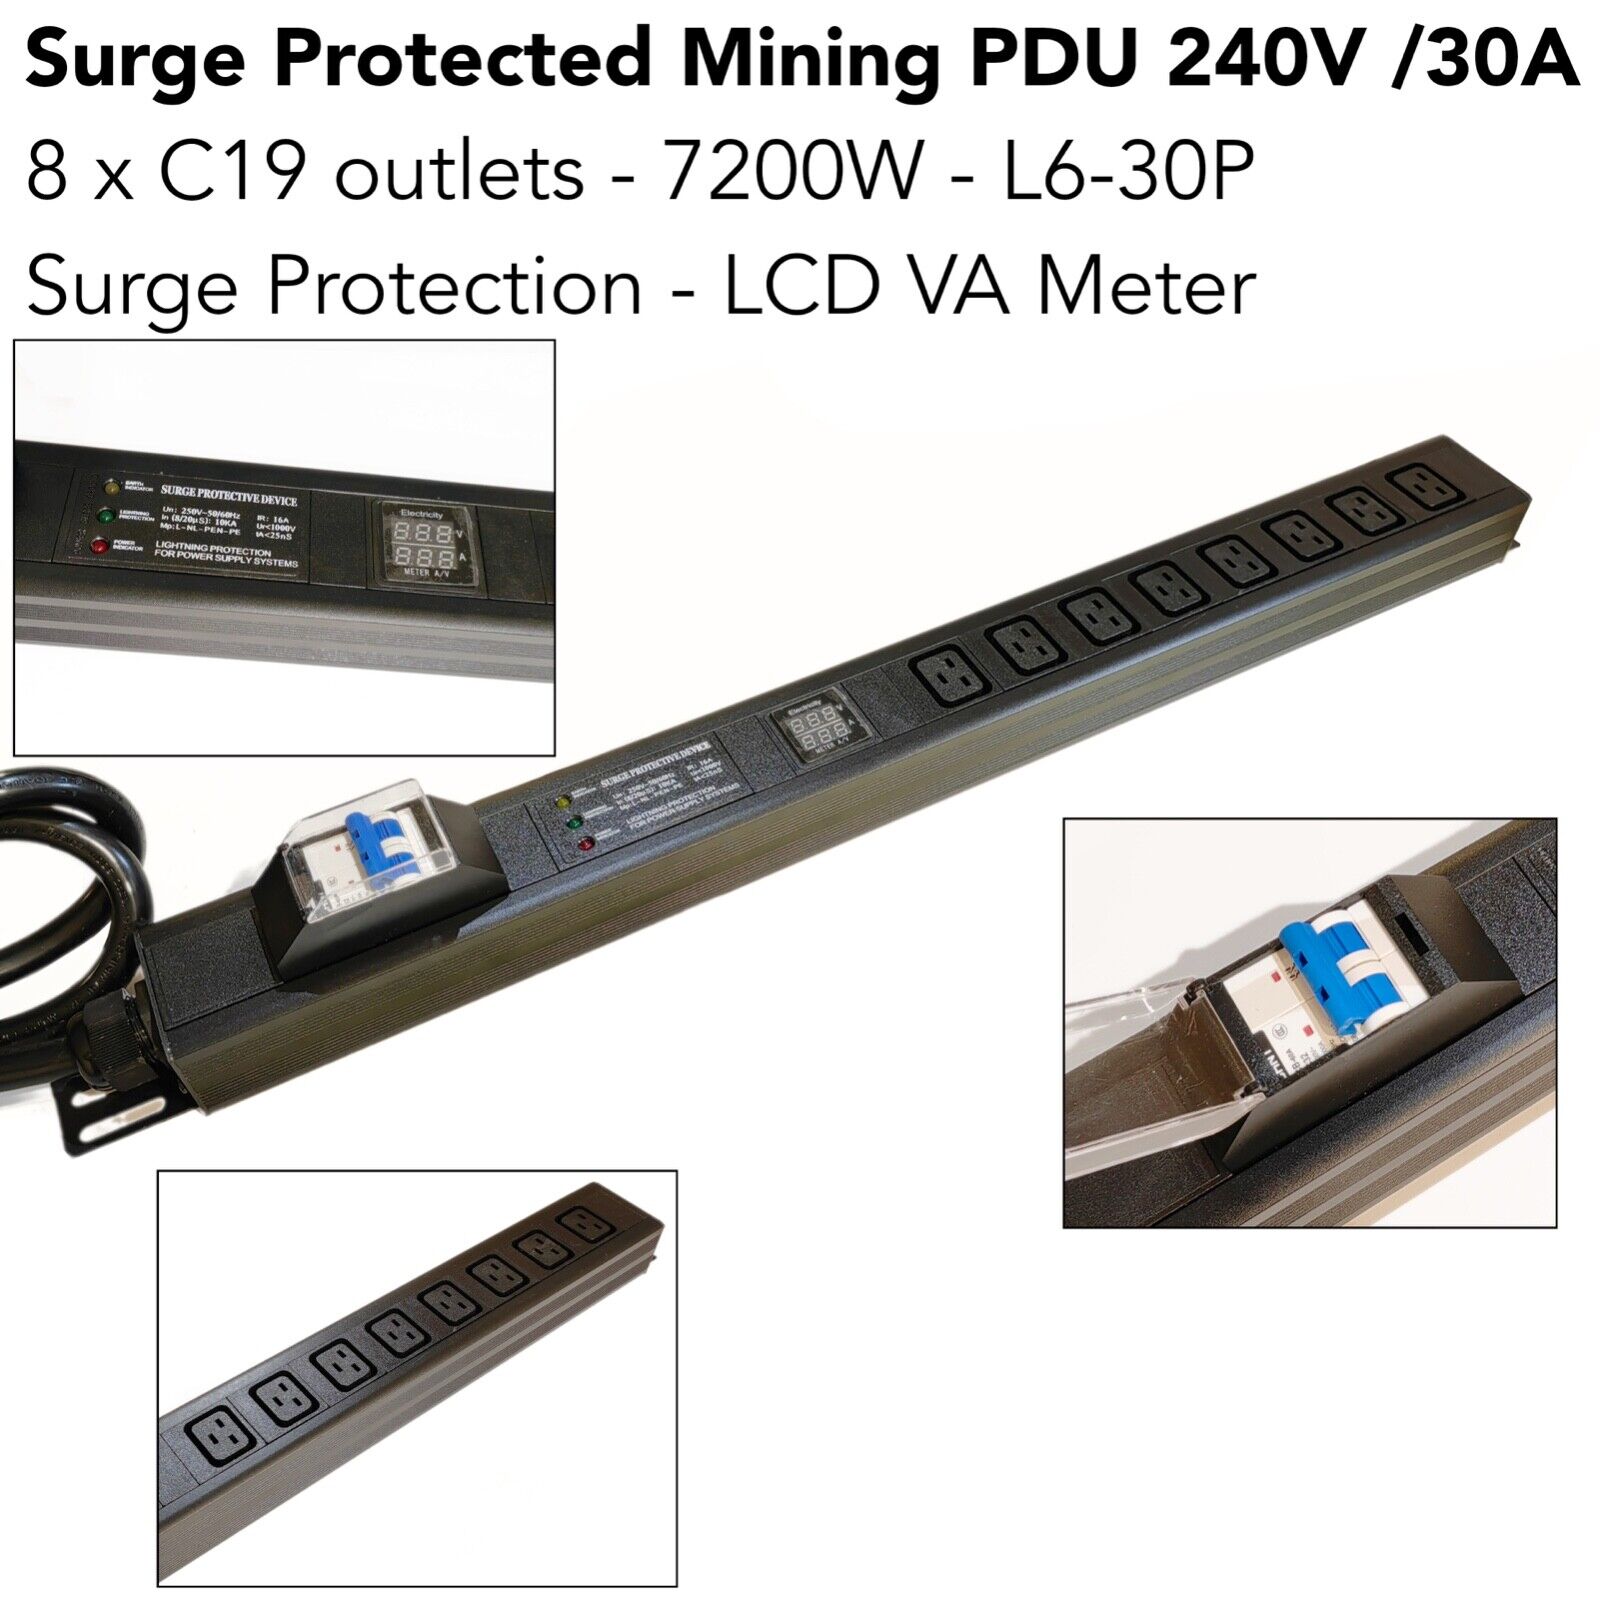 8-Port C19 PDU 240V 30A VA Meter Surge Protector L6-30P Plug For BTC Mining 1.5U